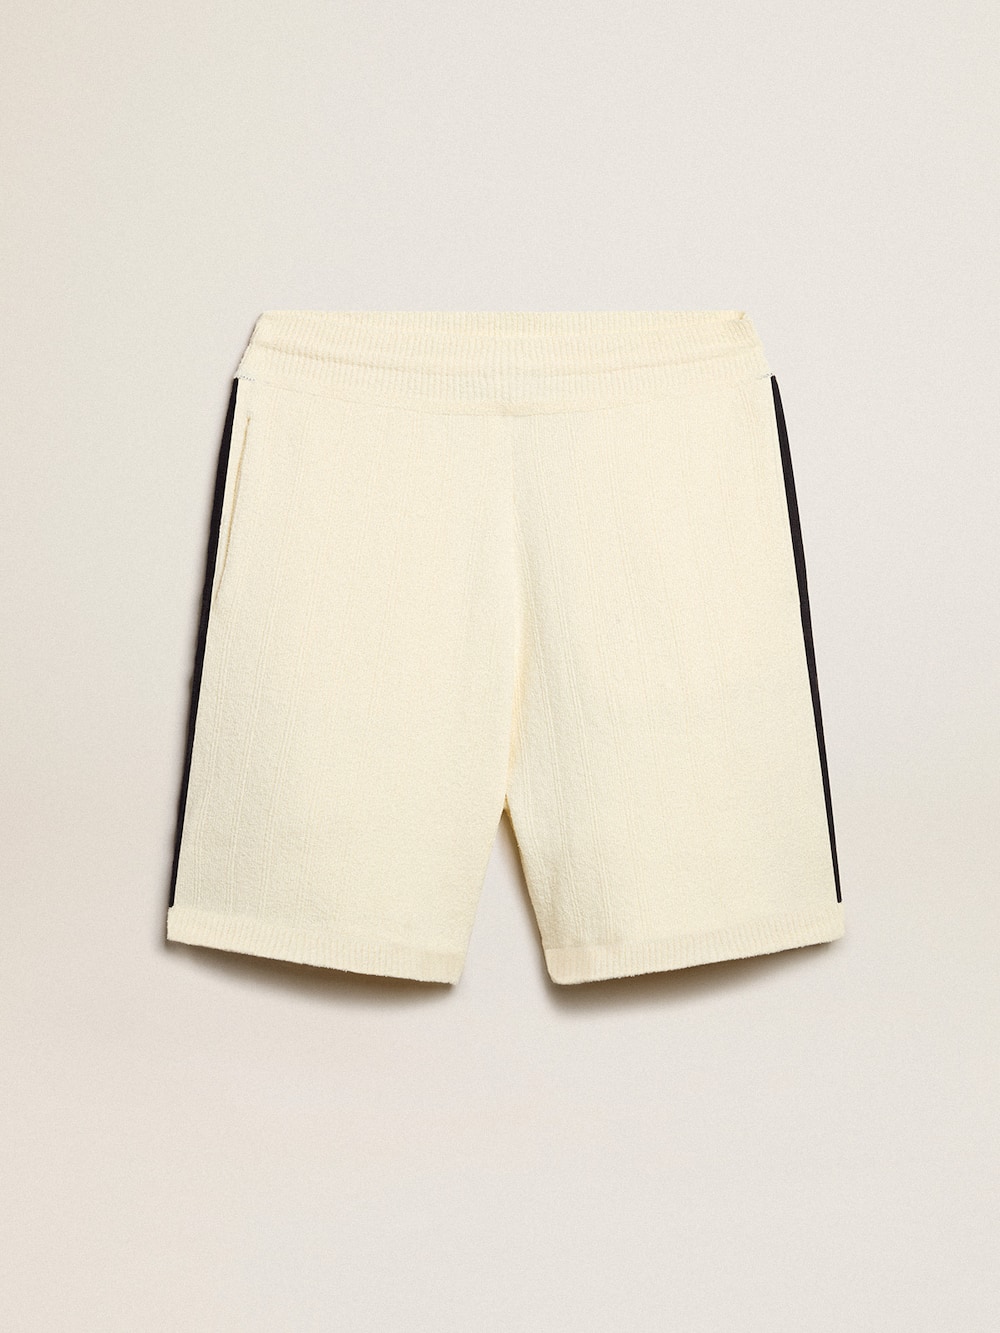 Golden Goose - Pantalón corto de hombre color blanco antiguo con tejido acanalado azul en los lados in 